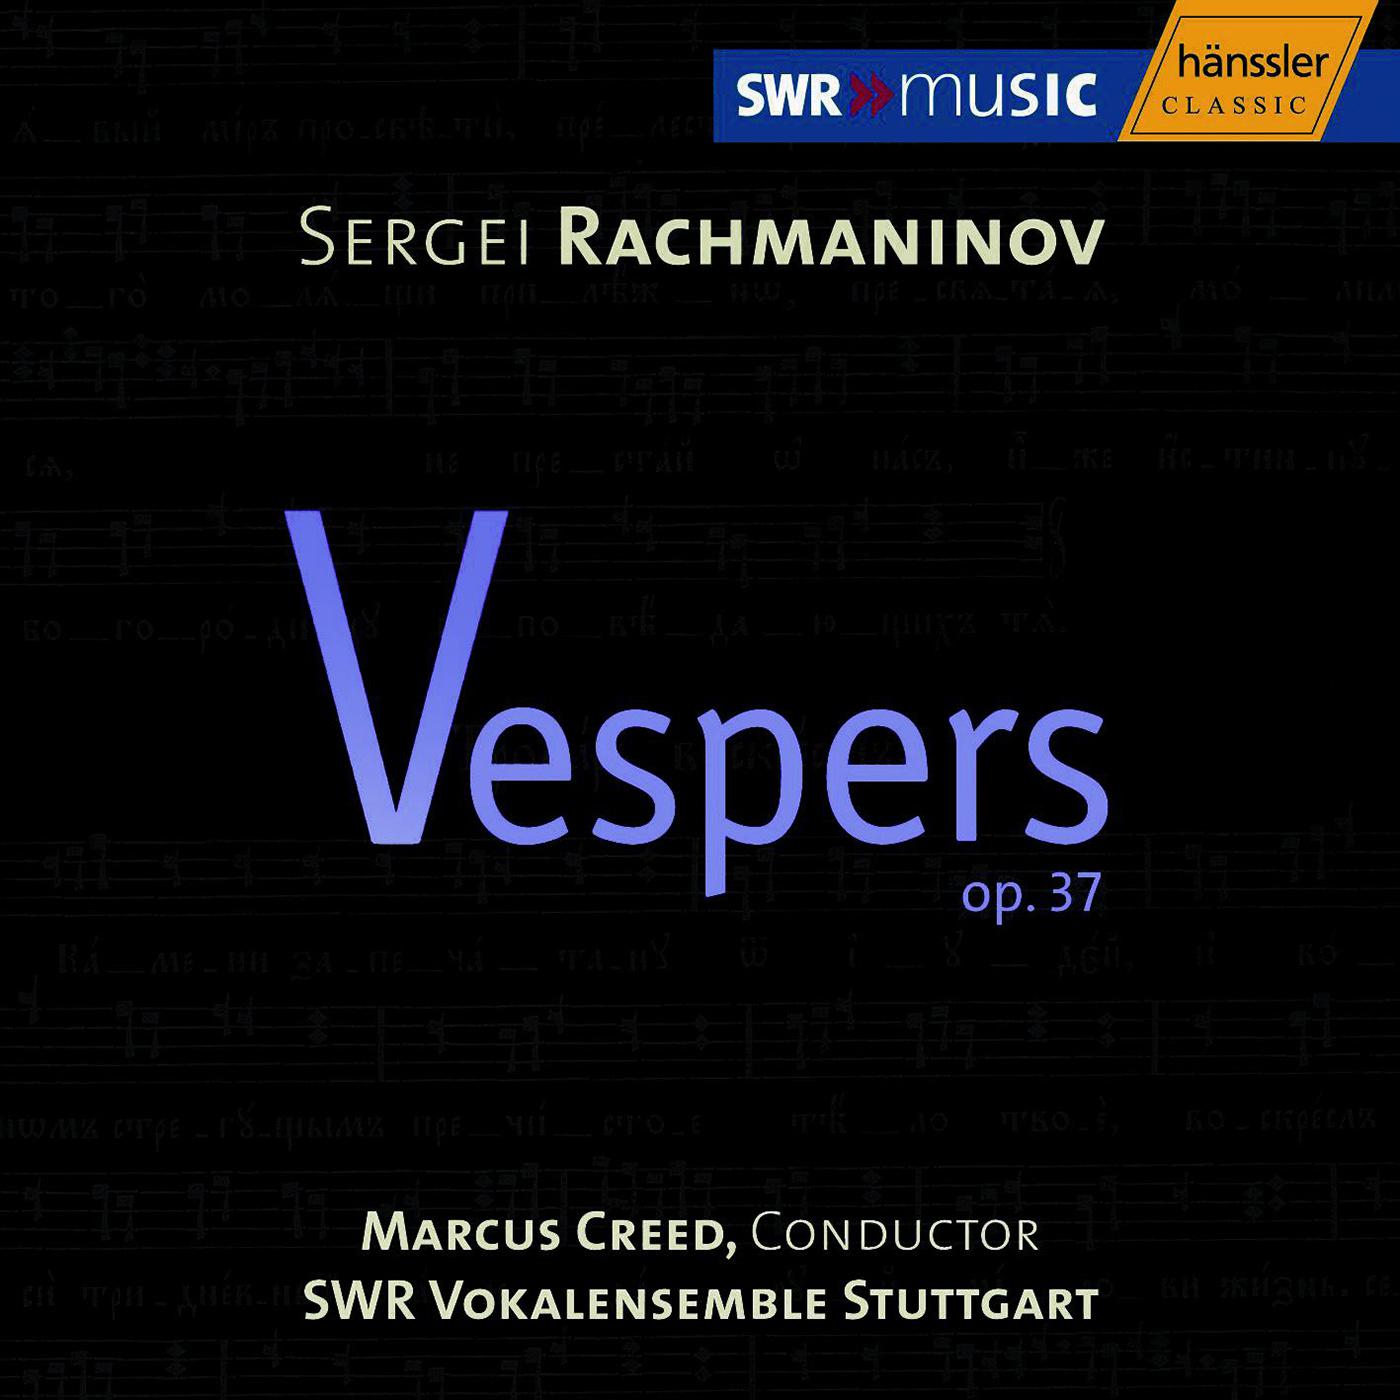 RACHMANINOV: Vespers, Op. 37